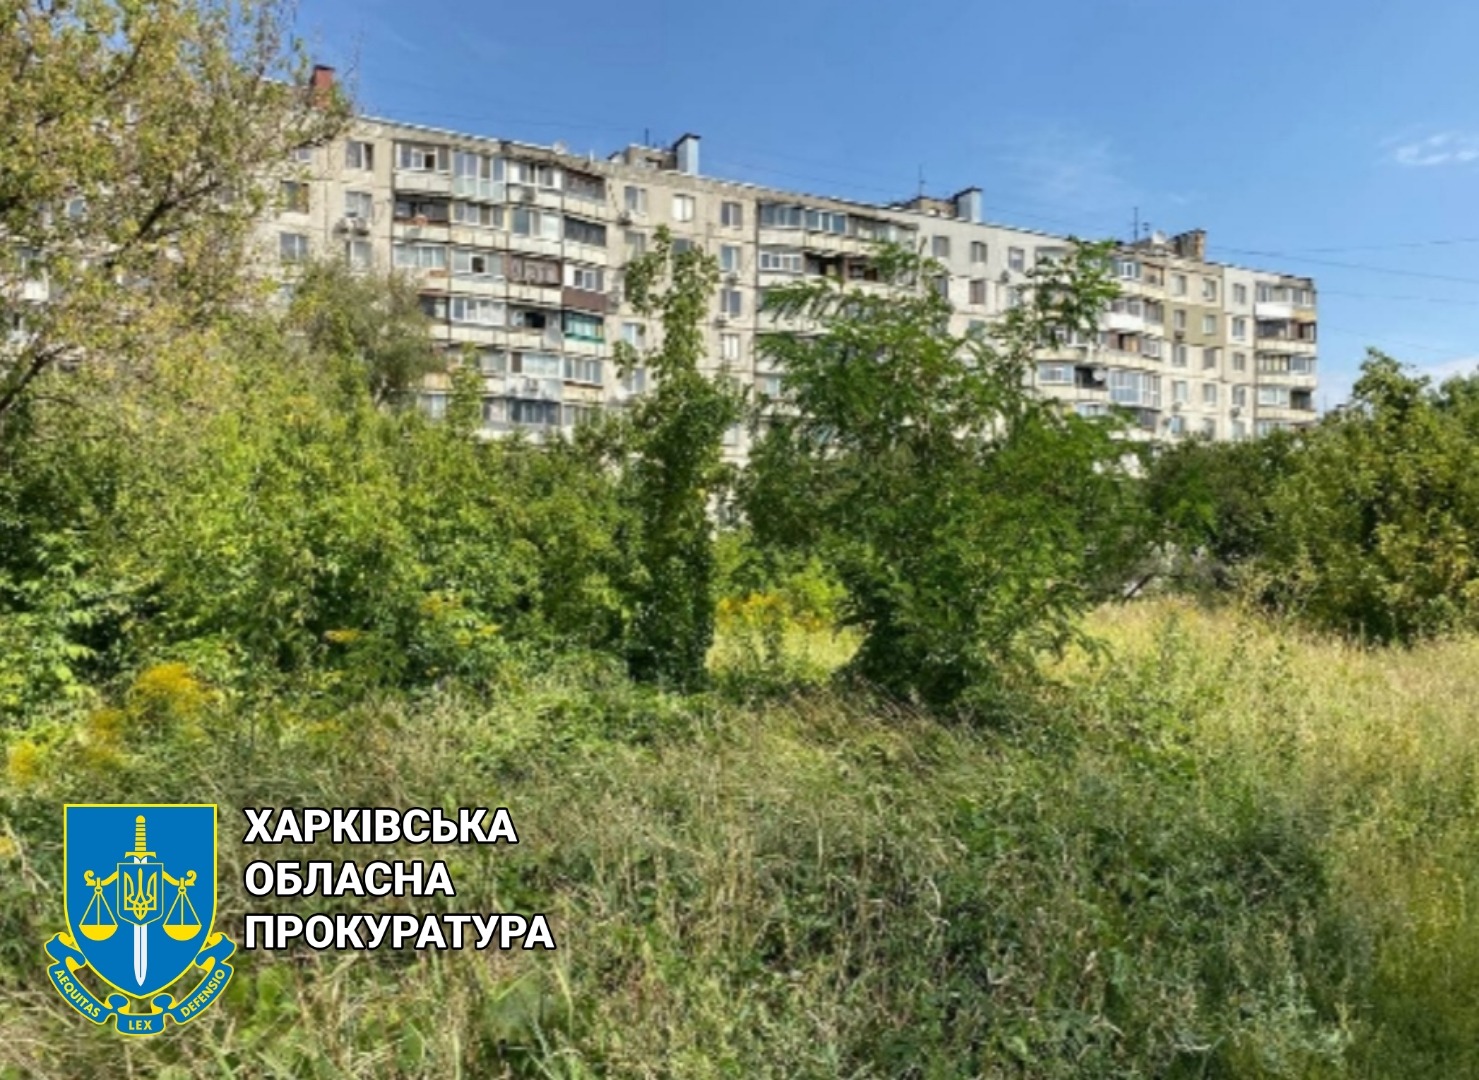 Прокуратура требует вернуть Харьковской городской территориальной громаде участок земли стоимостью 115 млн грн